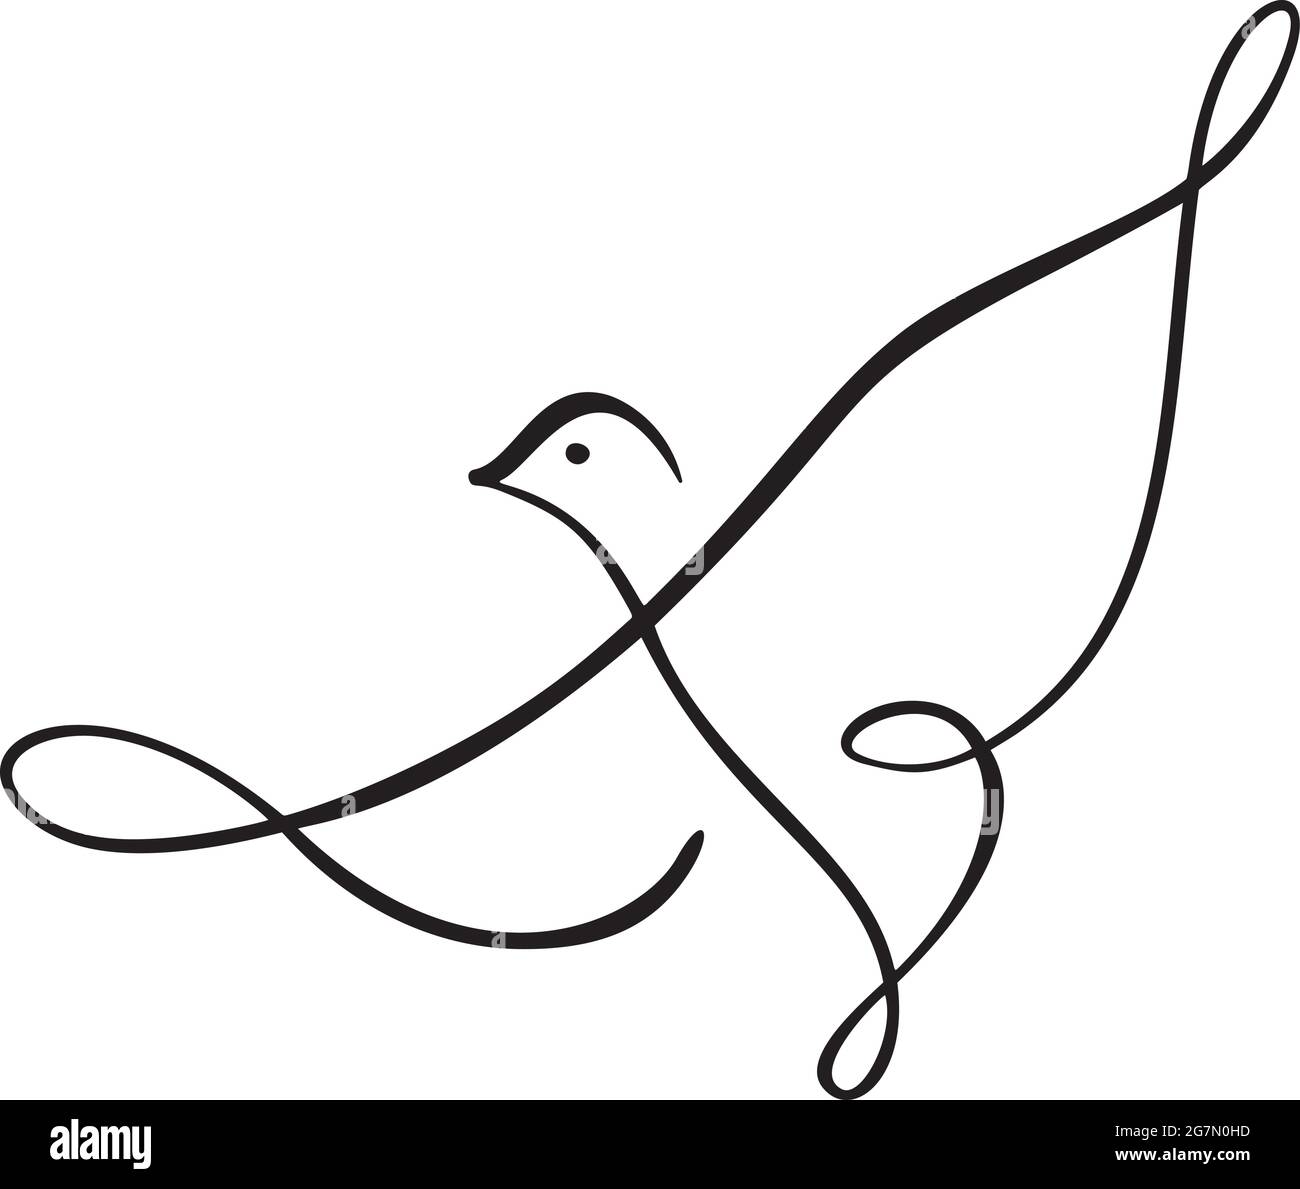 Kontinuierlich eine Linie Zeichnung Vogel. Logo der fliegenden Taube. Schwarz-Weiß-Vektorgrafik. Konzept für Logo, Karte, Banner, Poster, Flyer Stock Vektor